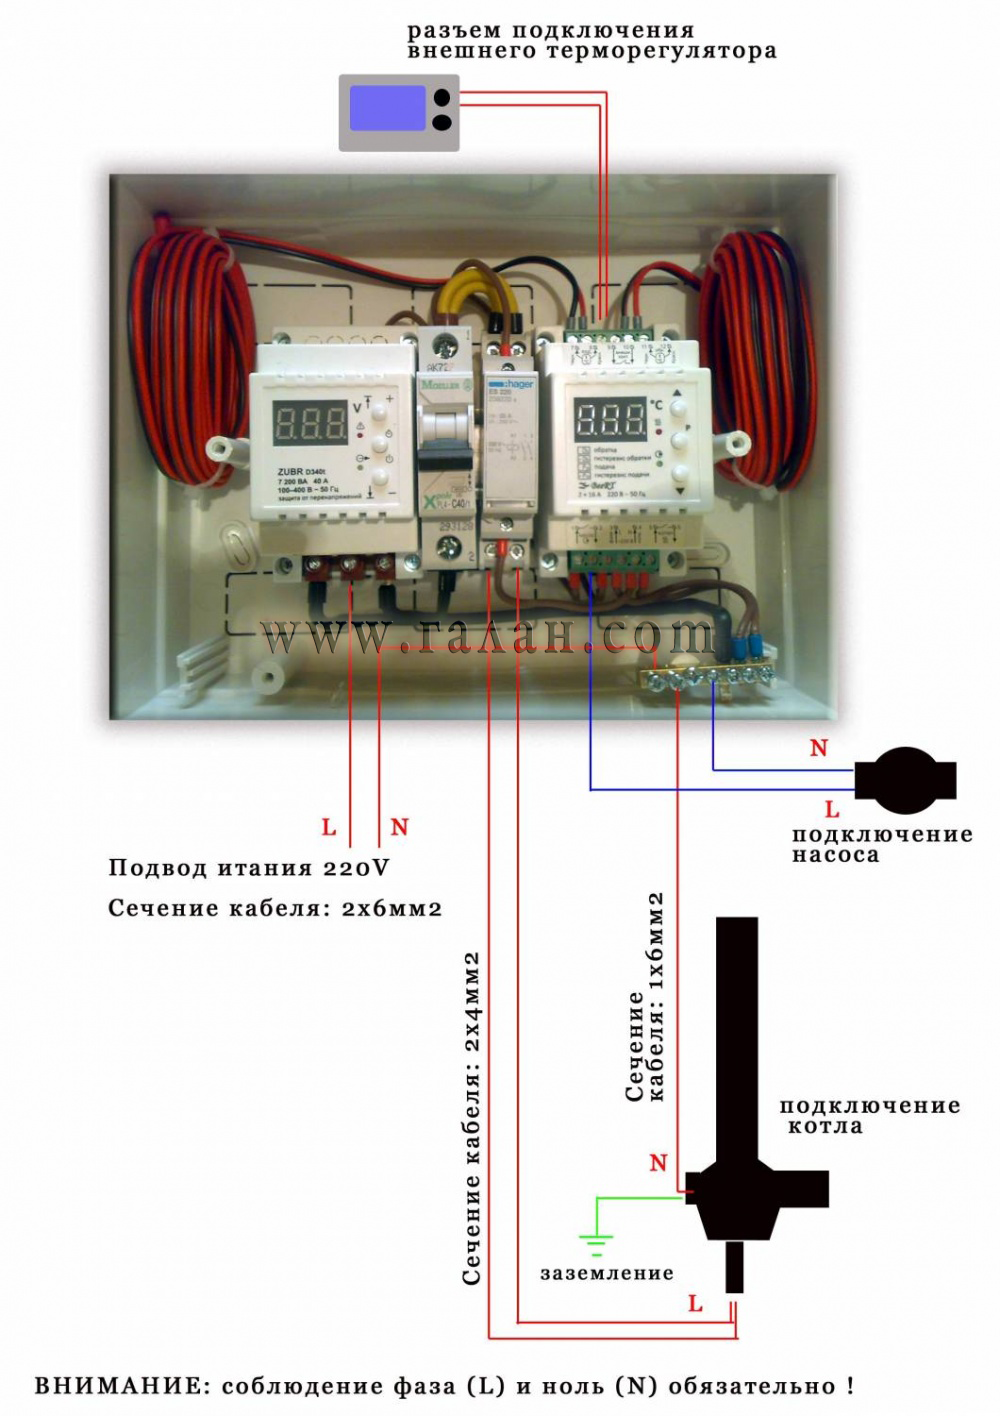 Управление электрокотлом : готовый блок управления котлом или электроизделия для подключения электродного котла